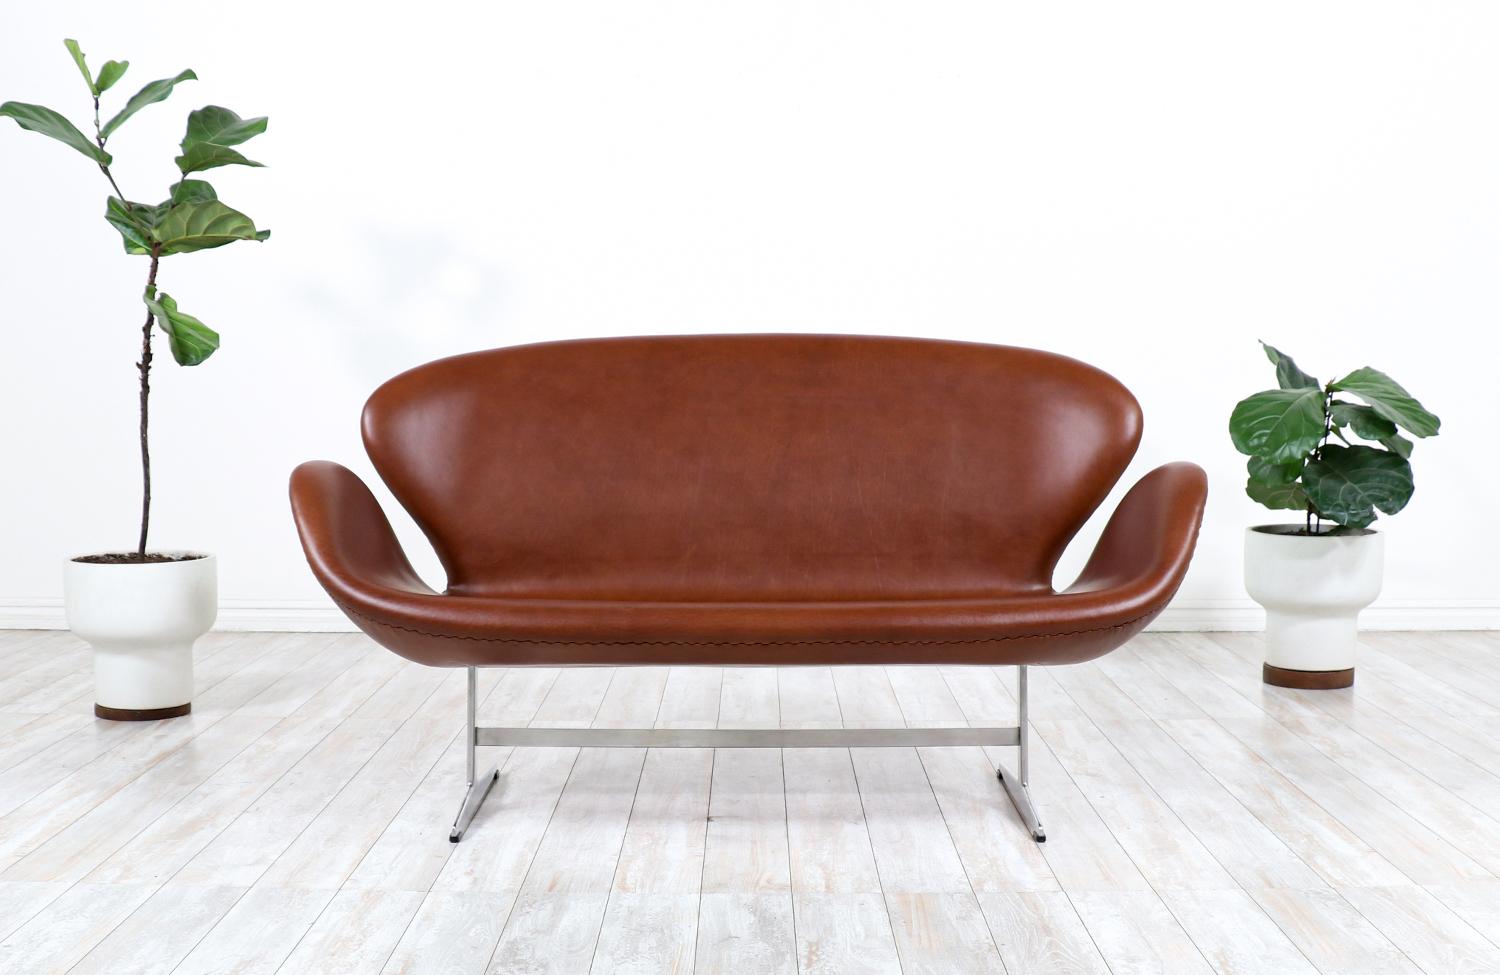 Das ursprünglich für das SAS Royal Hotel in Kopenhagen entworfene Sofa Swan des dänischen Designpioniers Arne Jacobsen ist zu einer Ikone und einem Synonym für die dänische Moderne geworden. Dieses bequeme Design ist mit einem wunderschönen neuen